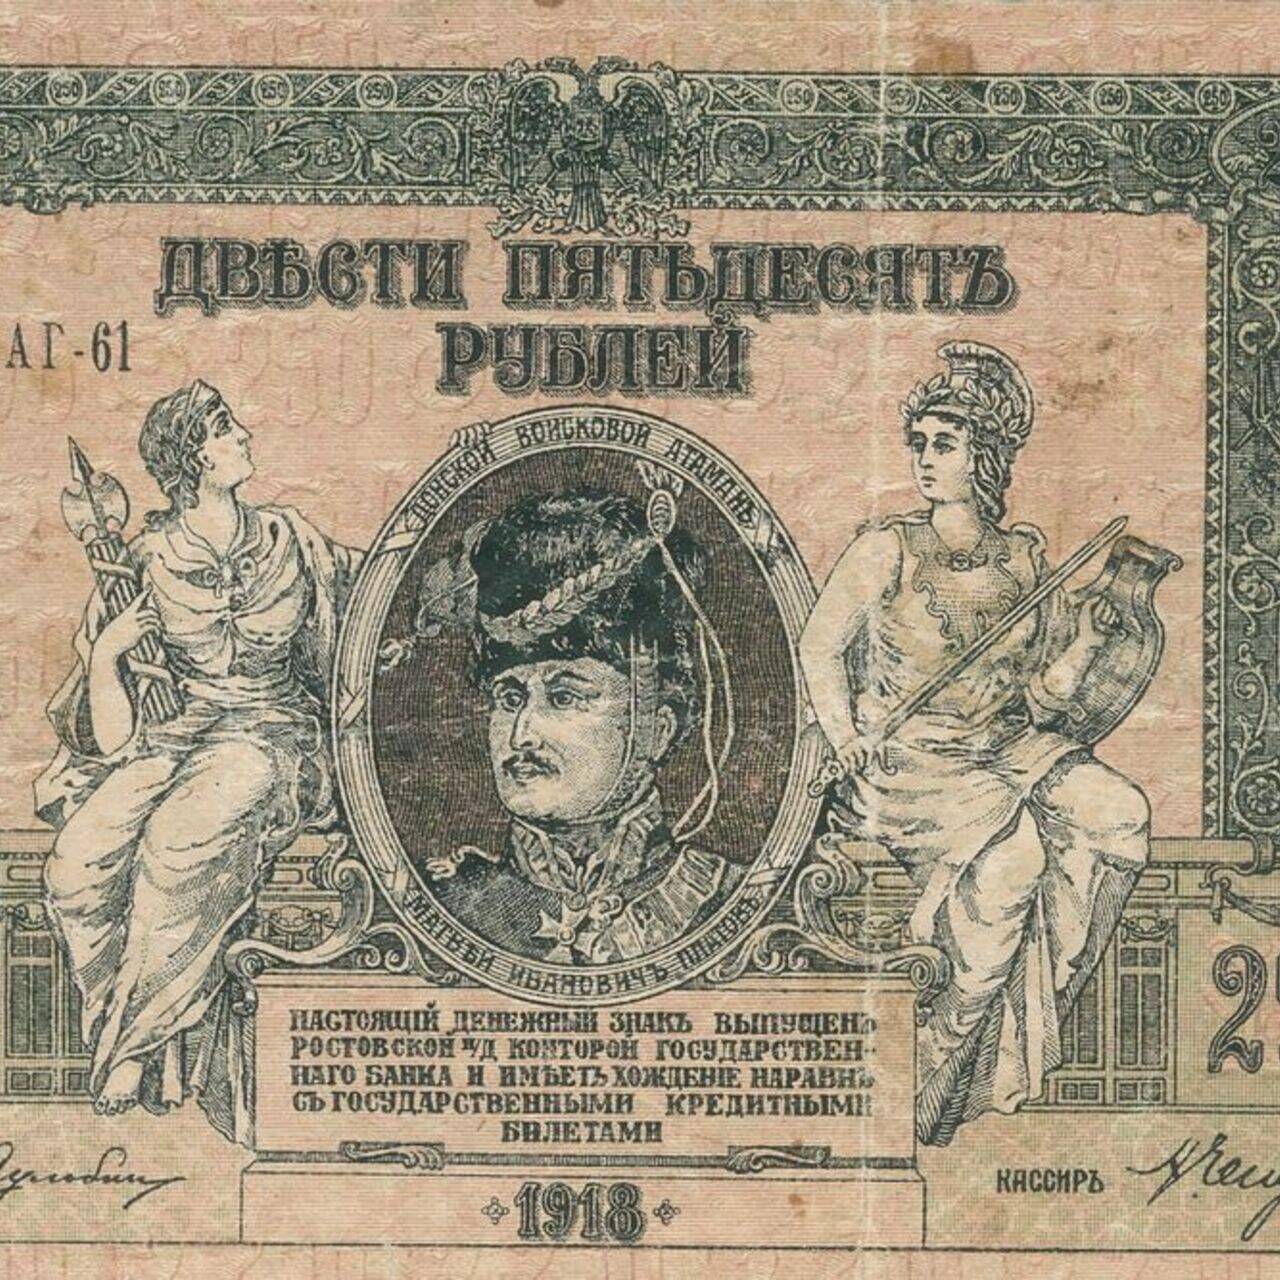 Ростов-на-Дону. 250 Рублей, 1918 год.